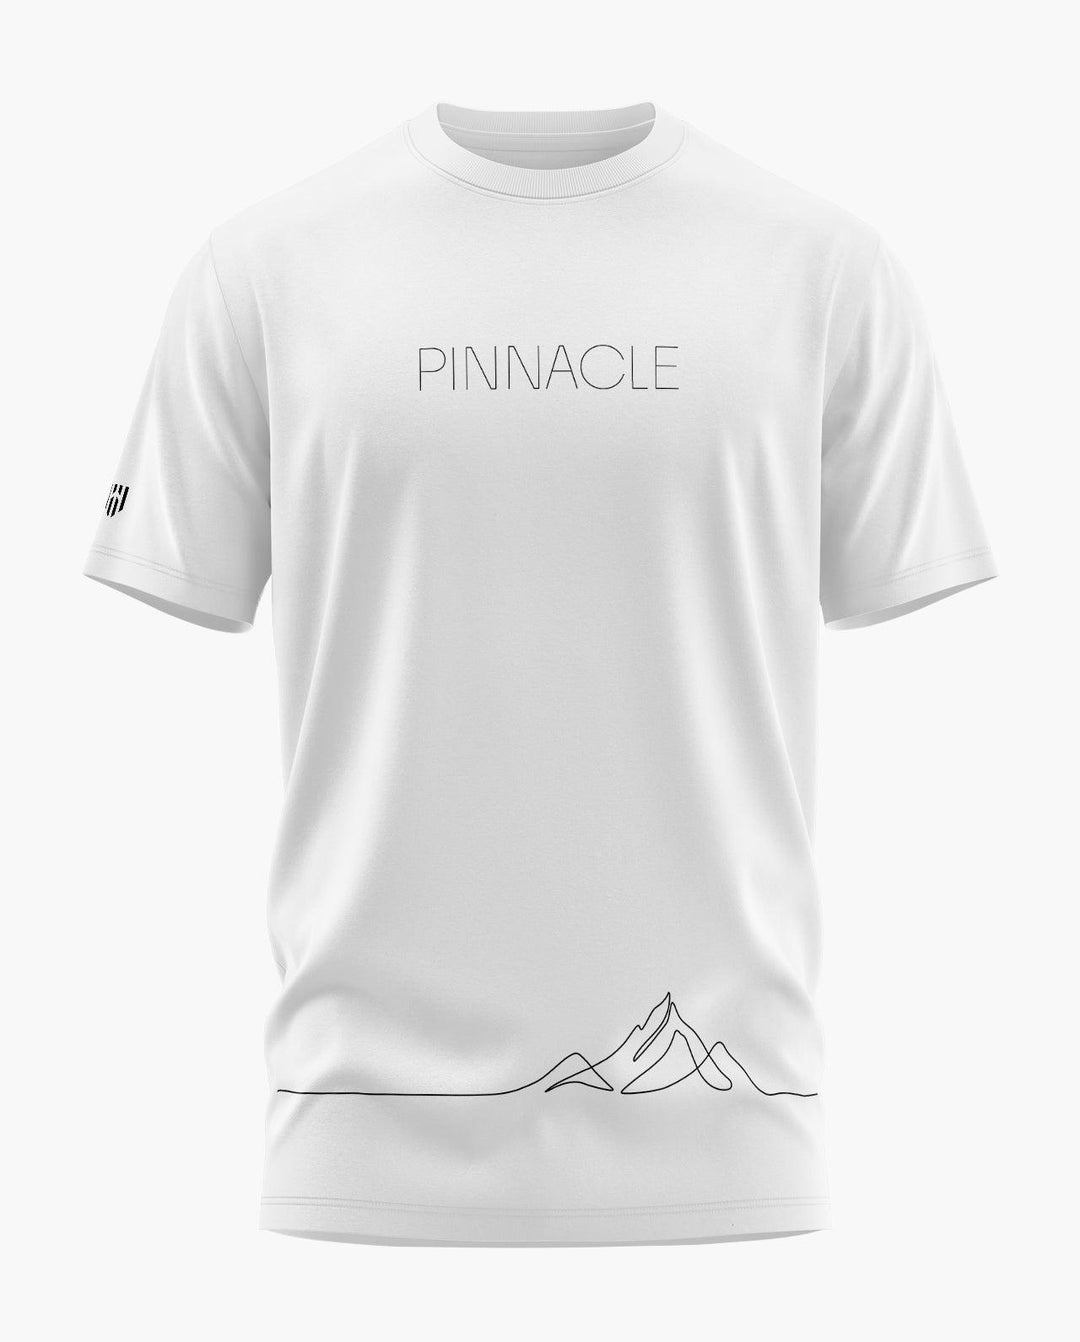 PINNACLE T-Shirt - Aero Armour